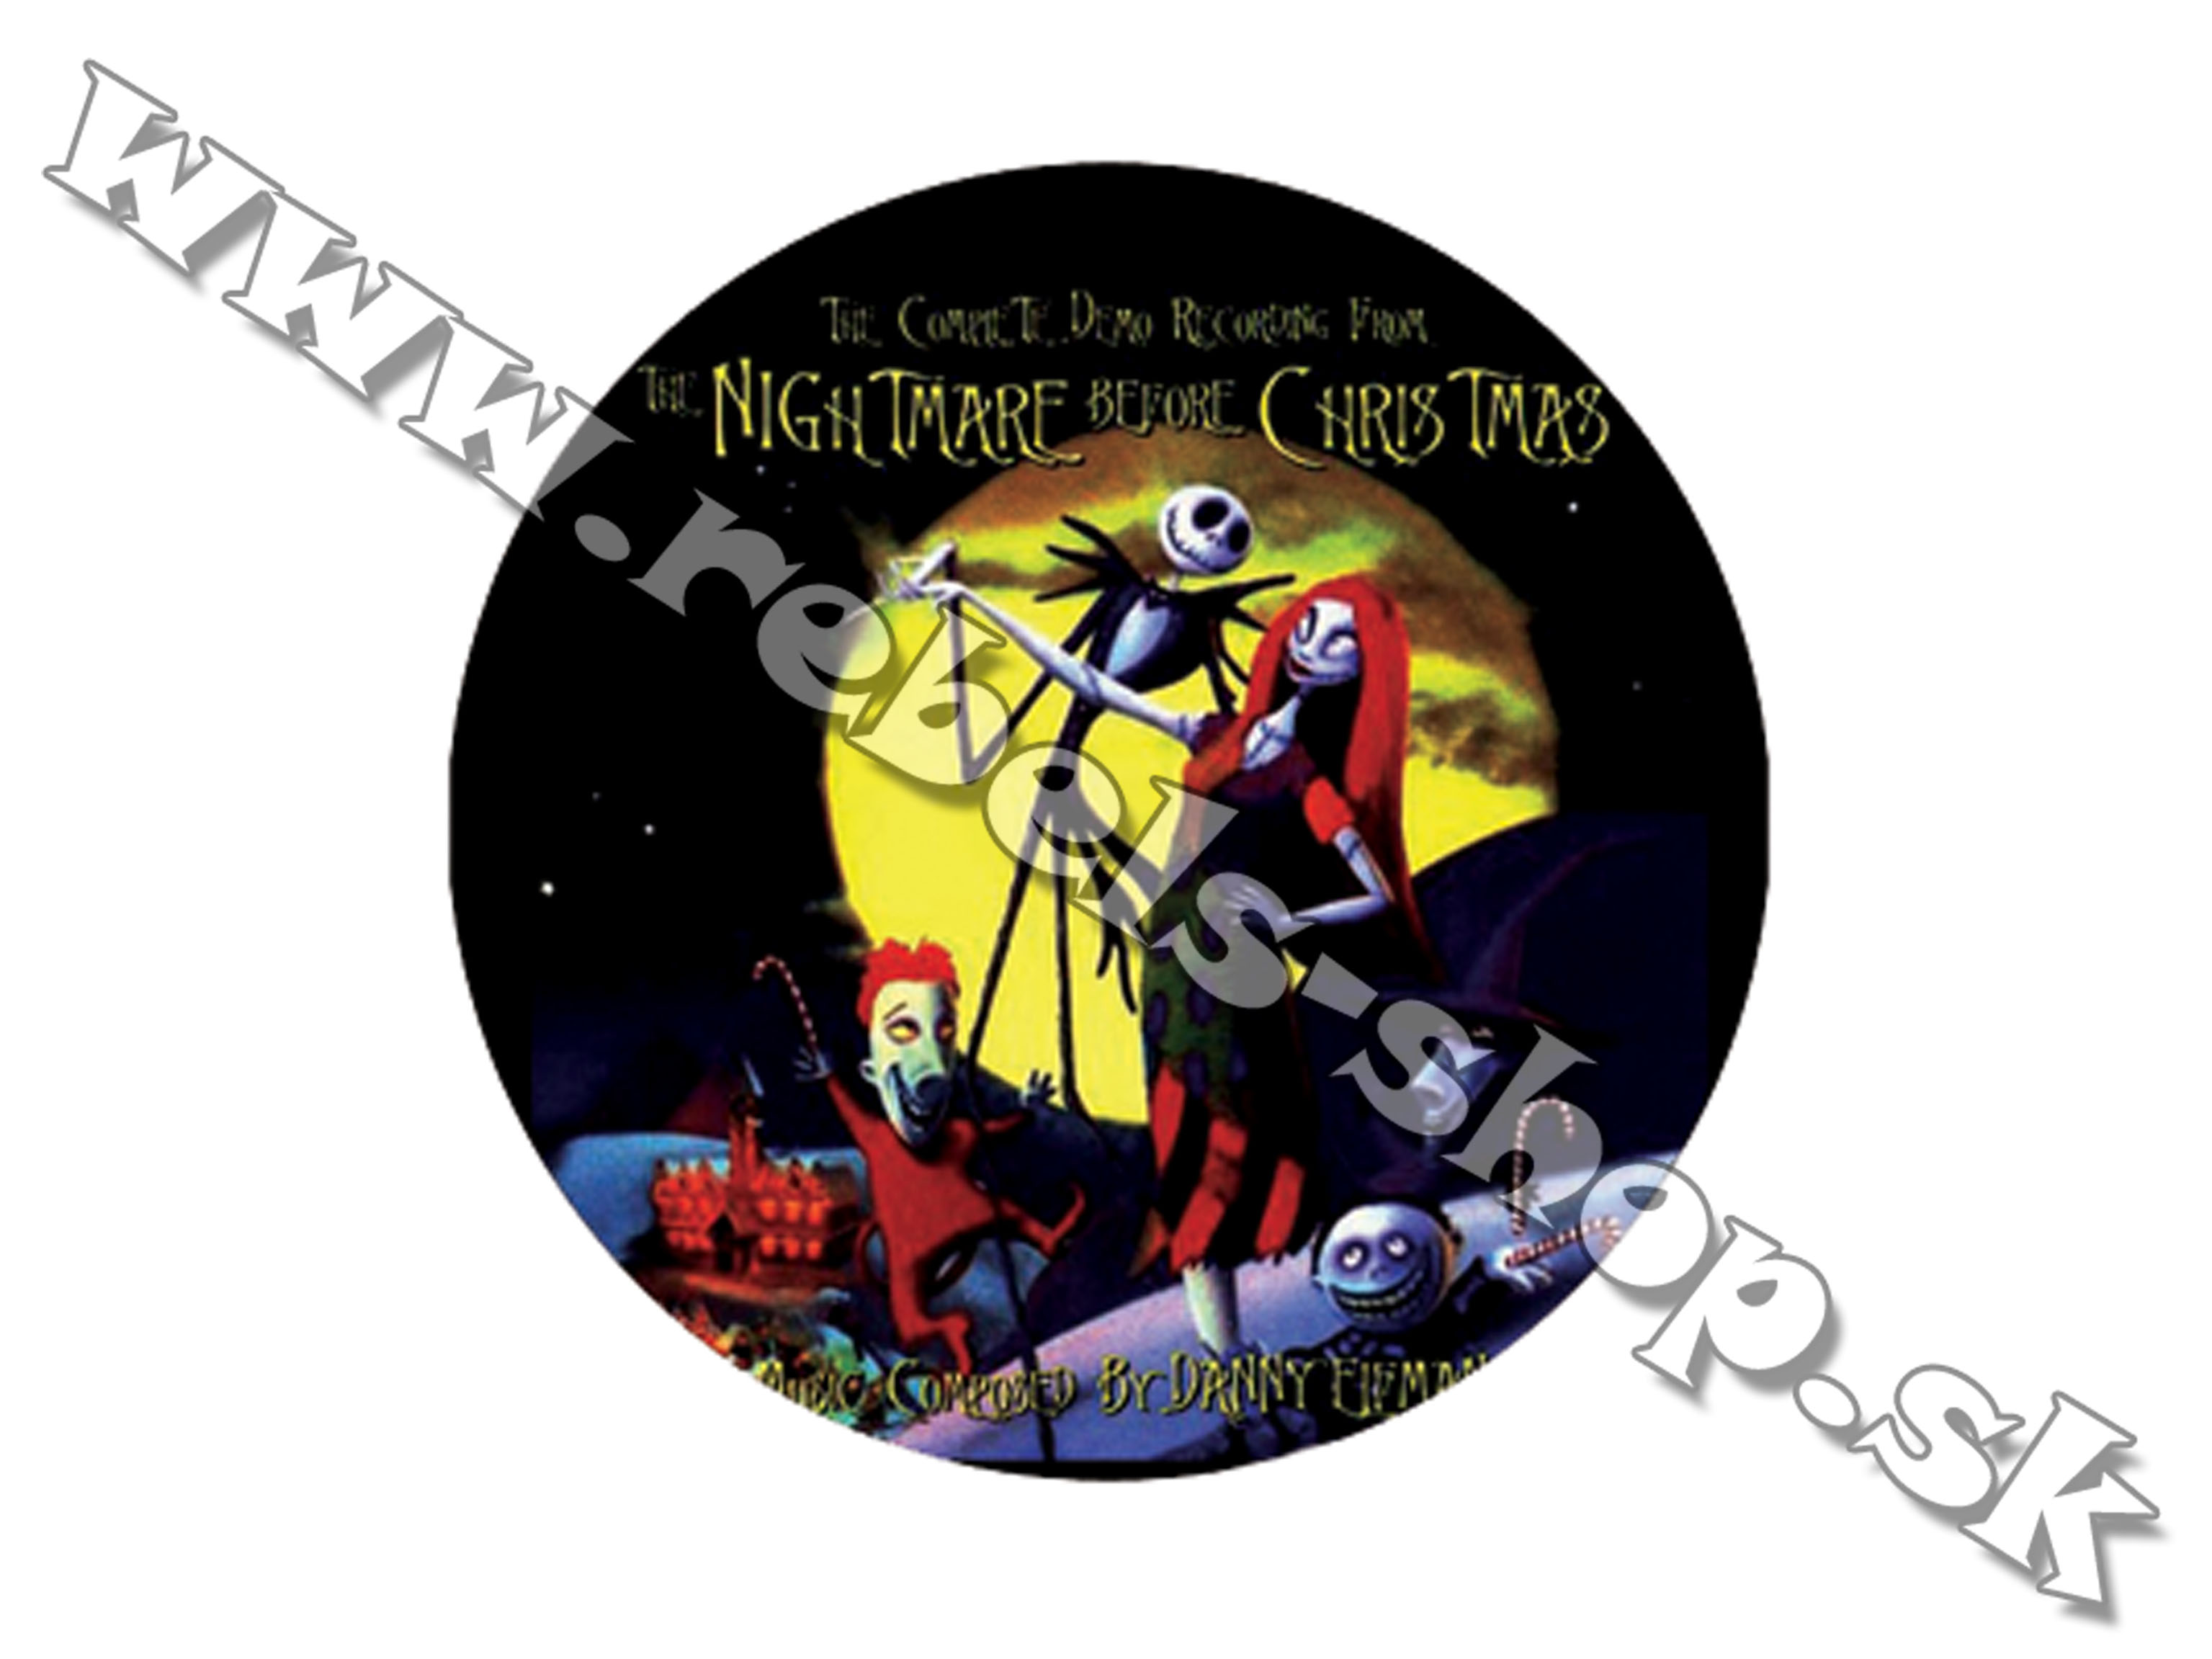 Odznak "Nightmare Before Christmas"